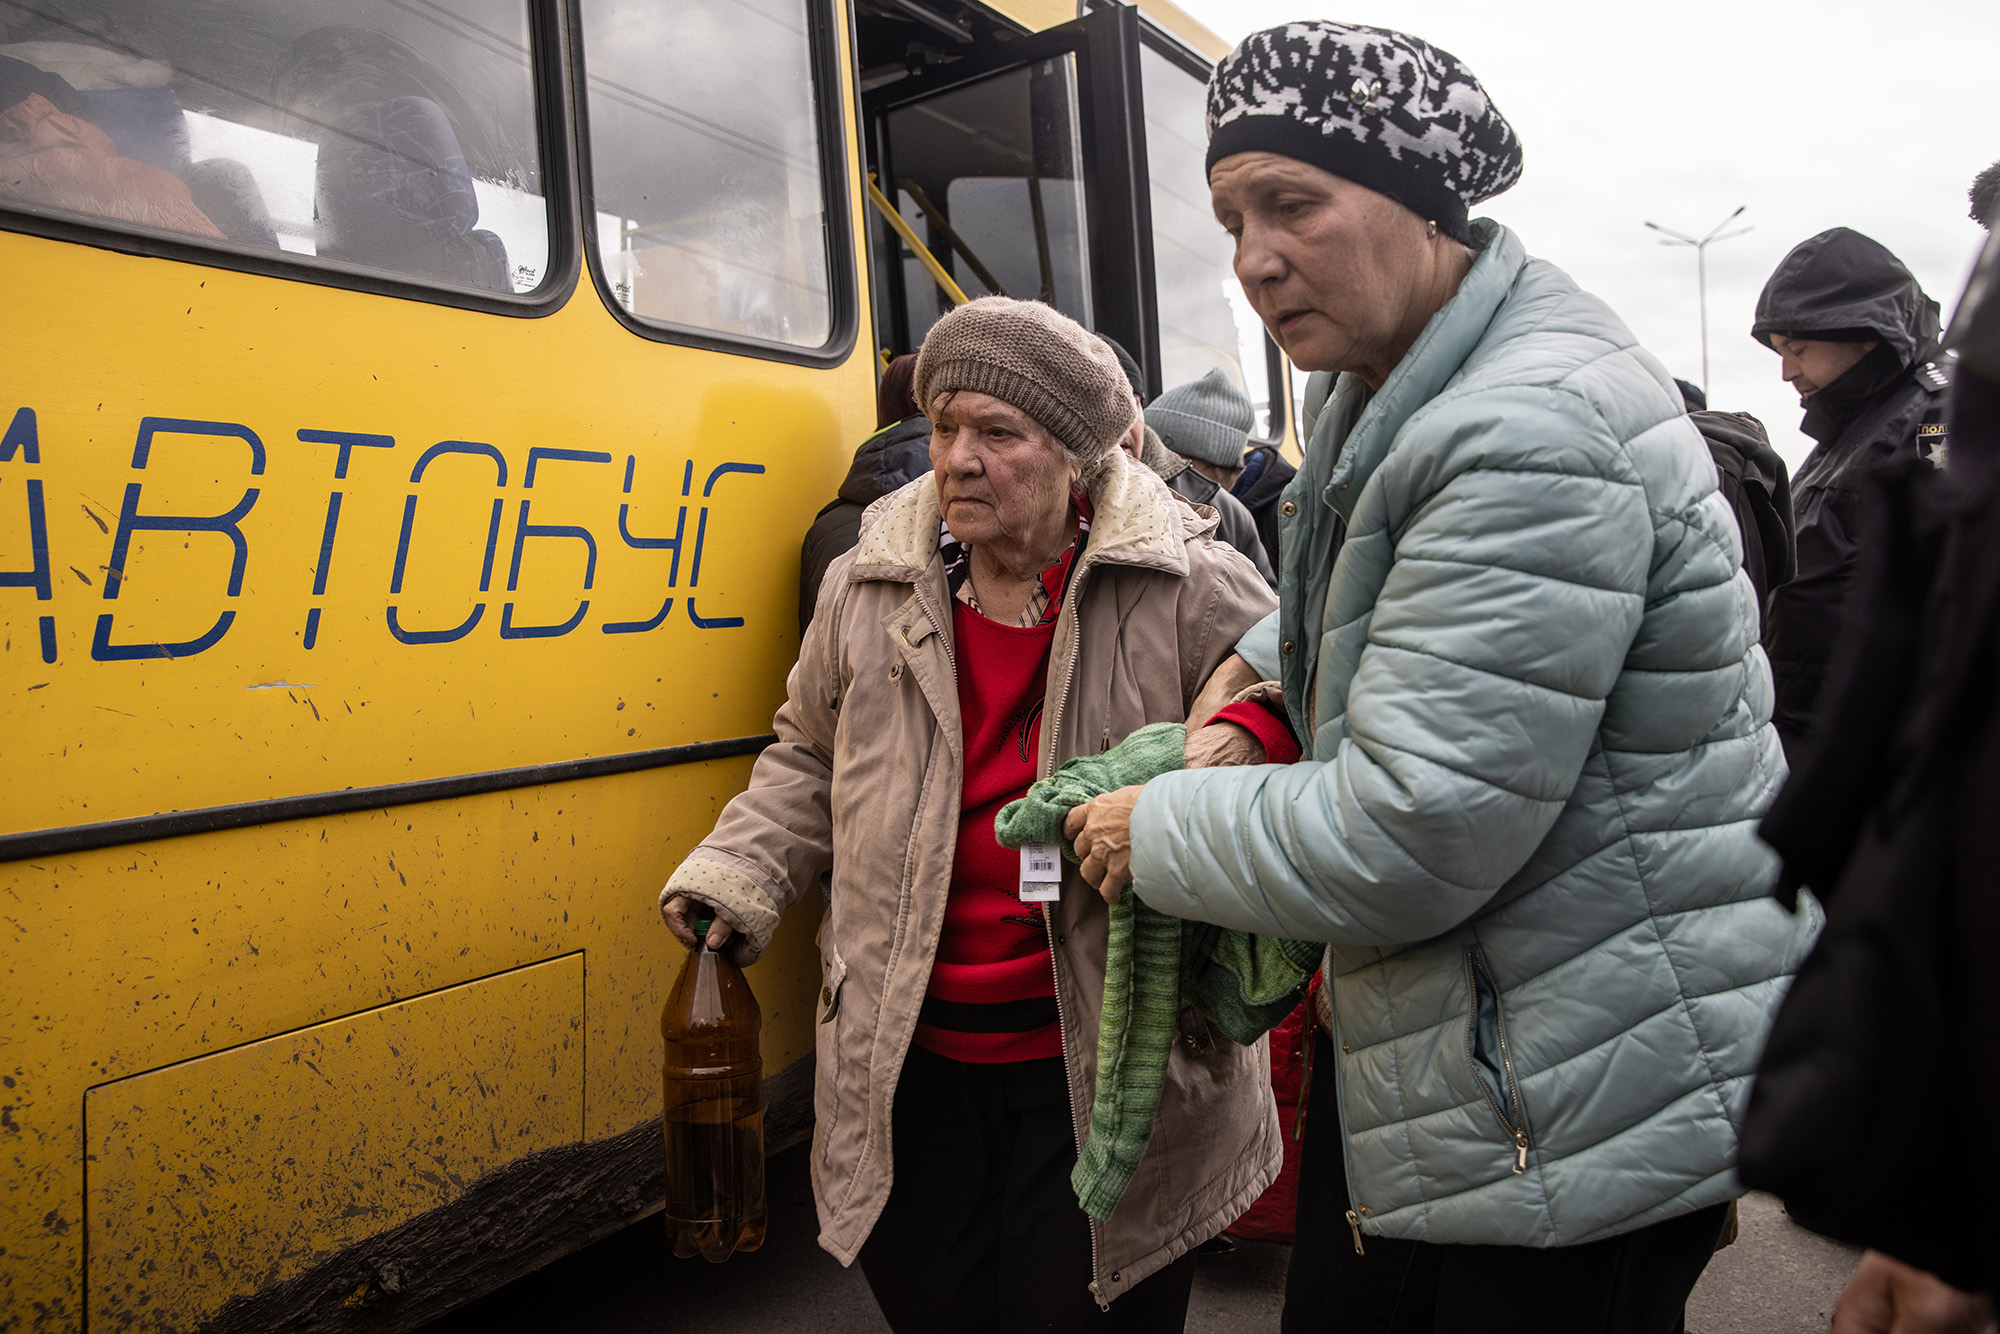 Mujeres de Mariúpol desembarcan en un punto de evacuación que transporta a personas de Mariúpol, Melitopol y las ciudades circundantes bajo control ruso, el 21 de abril, en Zaporizhzhia, Ucrania. (Chris McGrath/Getty Images)